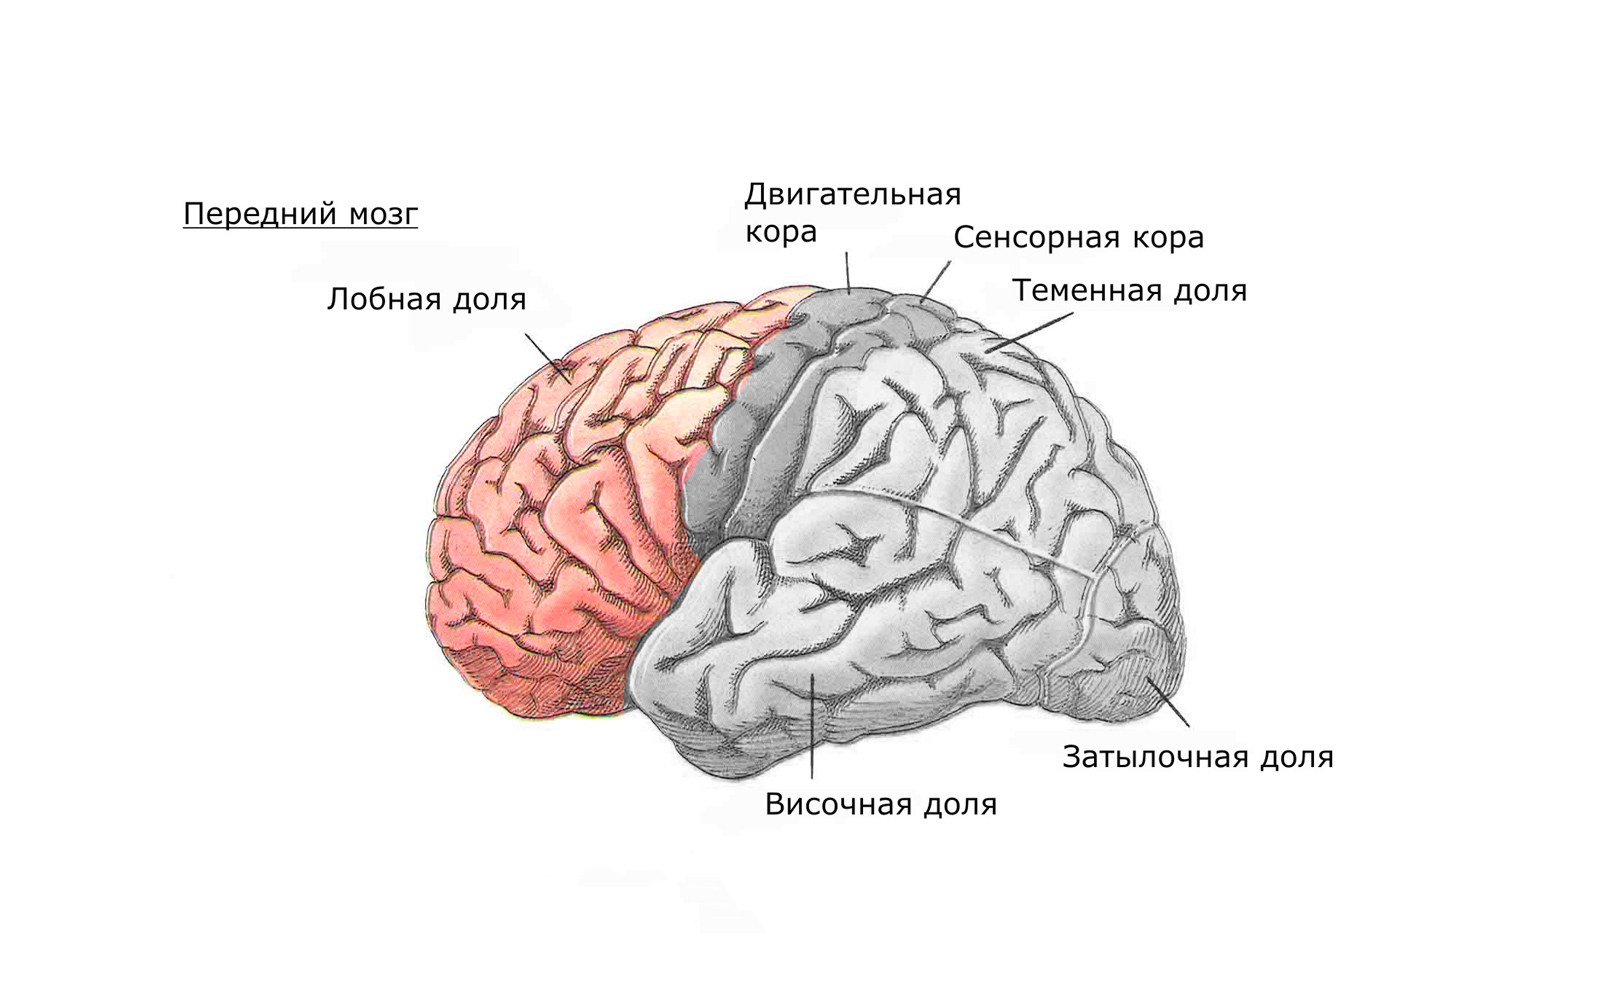 Передний мозг